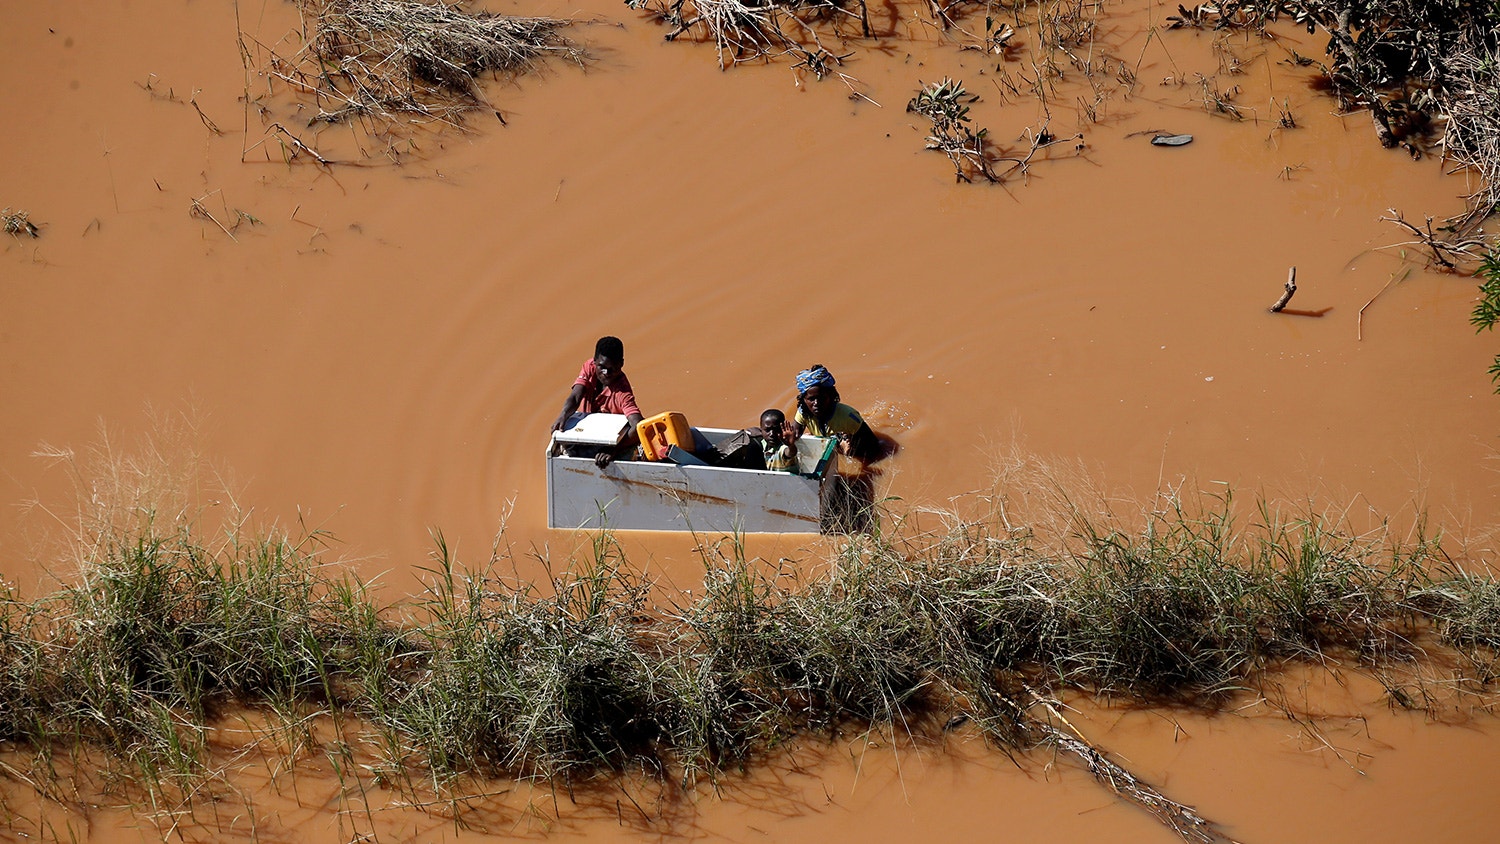  Crian&ccedil;a &eacute; transportada num frigor&iacute;fico durante as cheias provocadas pelo ciclone Idai, em Buzi, Mo&ccedil;ambique. 21 de mar&ccedil;o de 2019. | Siphiwe Sibeko - Reuters 